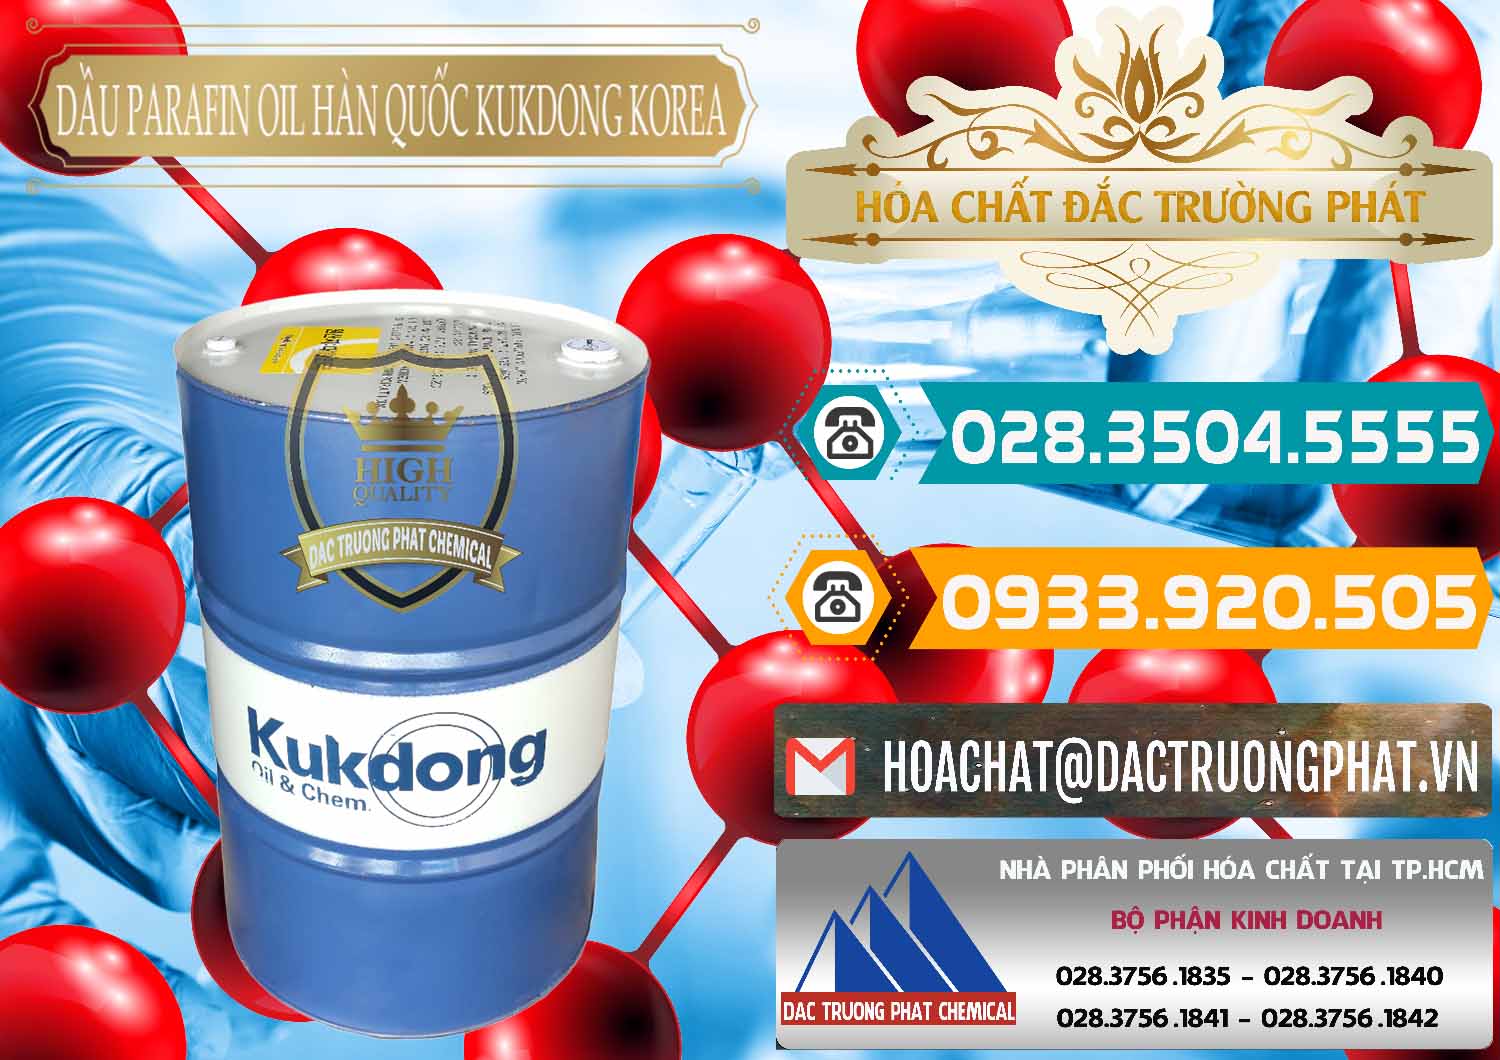 Công ty bán và cung cấp Dầu Parafin Oil Hàn Quốc Korea Kukdong - 0060 - Chuyên kinh doanh - cung cấp hóa chất tại TP.HCM - congtyhoachat.vn